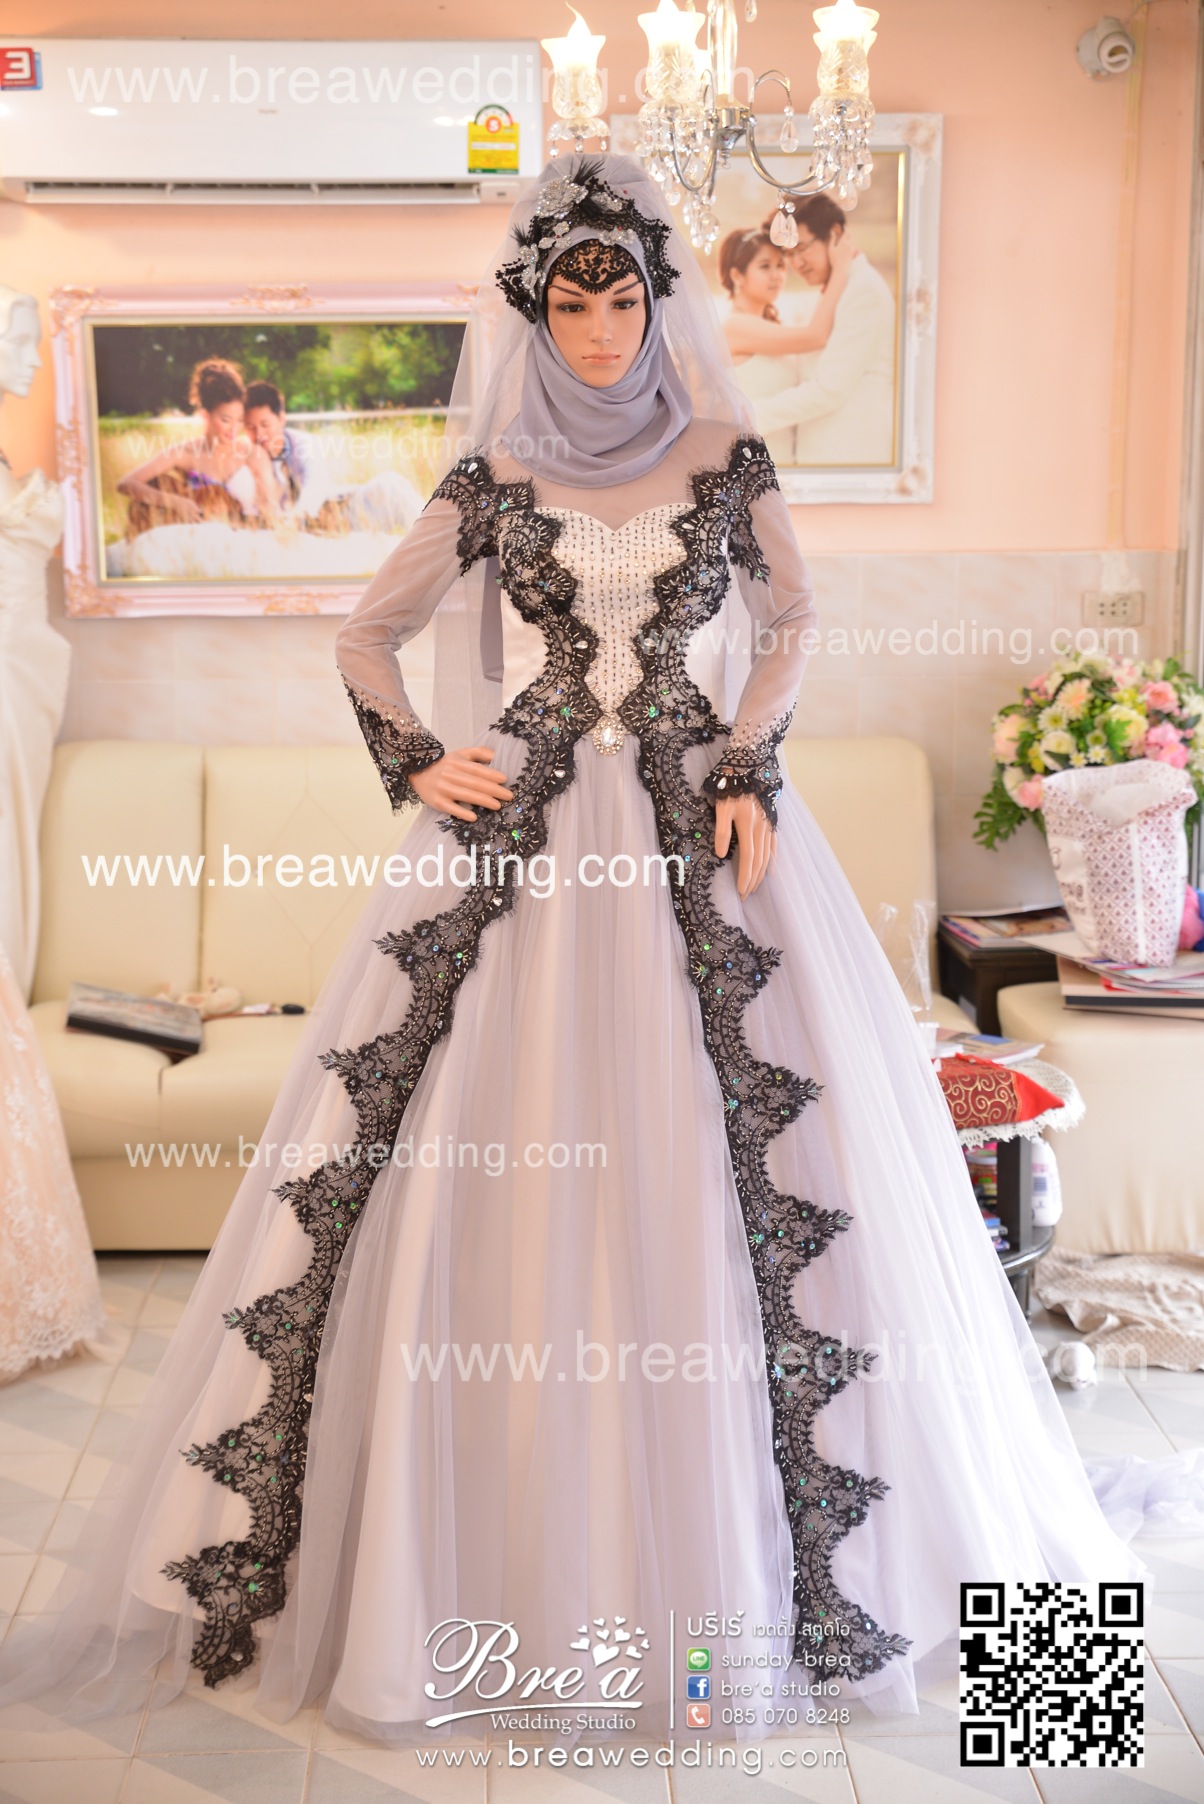 ชุดแต่งงานอิสลาม ชุดแต่งงานมุสลิม ร้านเวดดิ้ง นนทบุรี เช่าชุดแต่งงาน ถ่ายรูปแต่งงาน